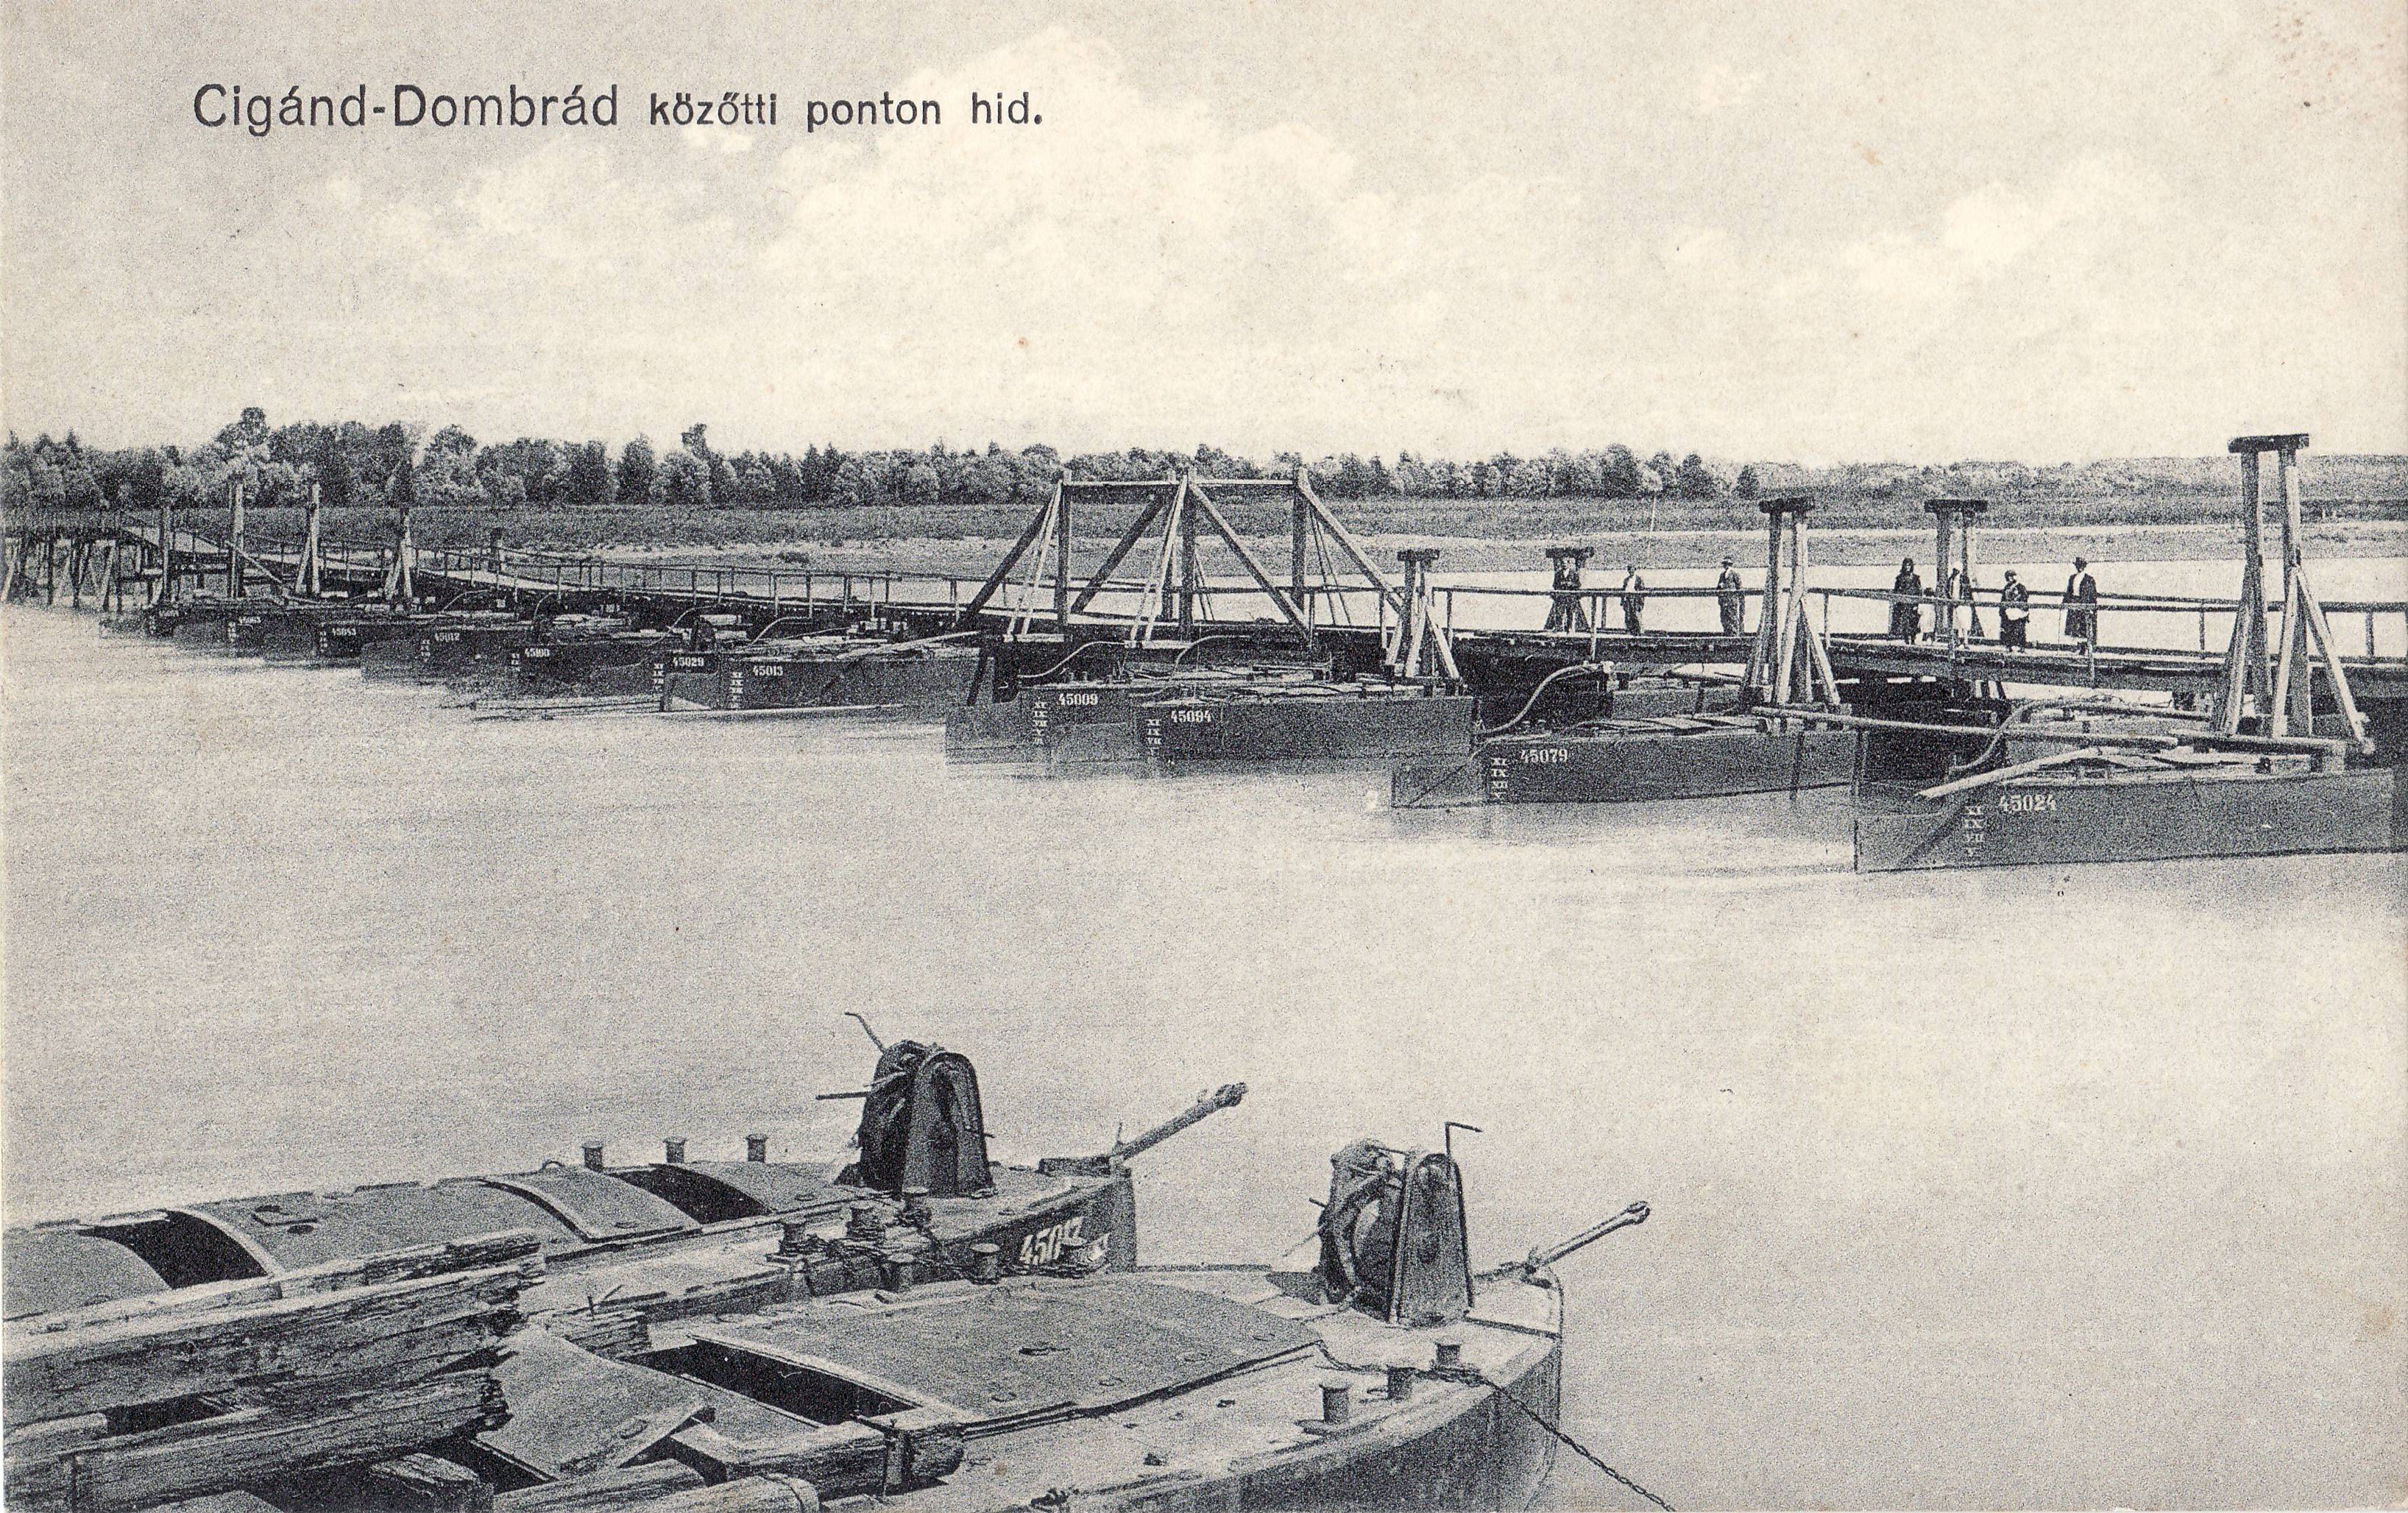 Cigánd-Dombrád közötti ponton híd (Magyar Környezetvédelmi és Vízügyi Múzeum - Duna Múzeum CC BY-NC-SA)